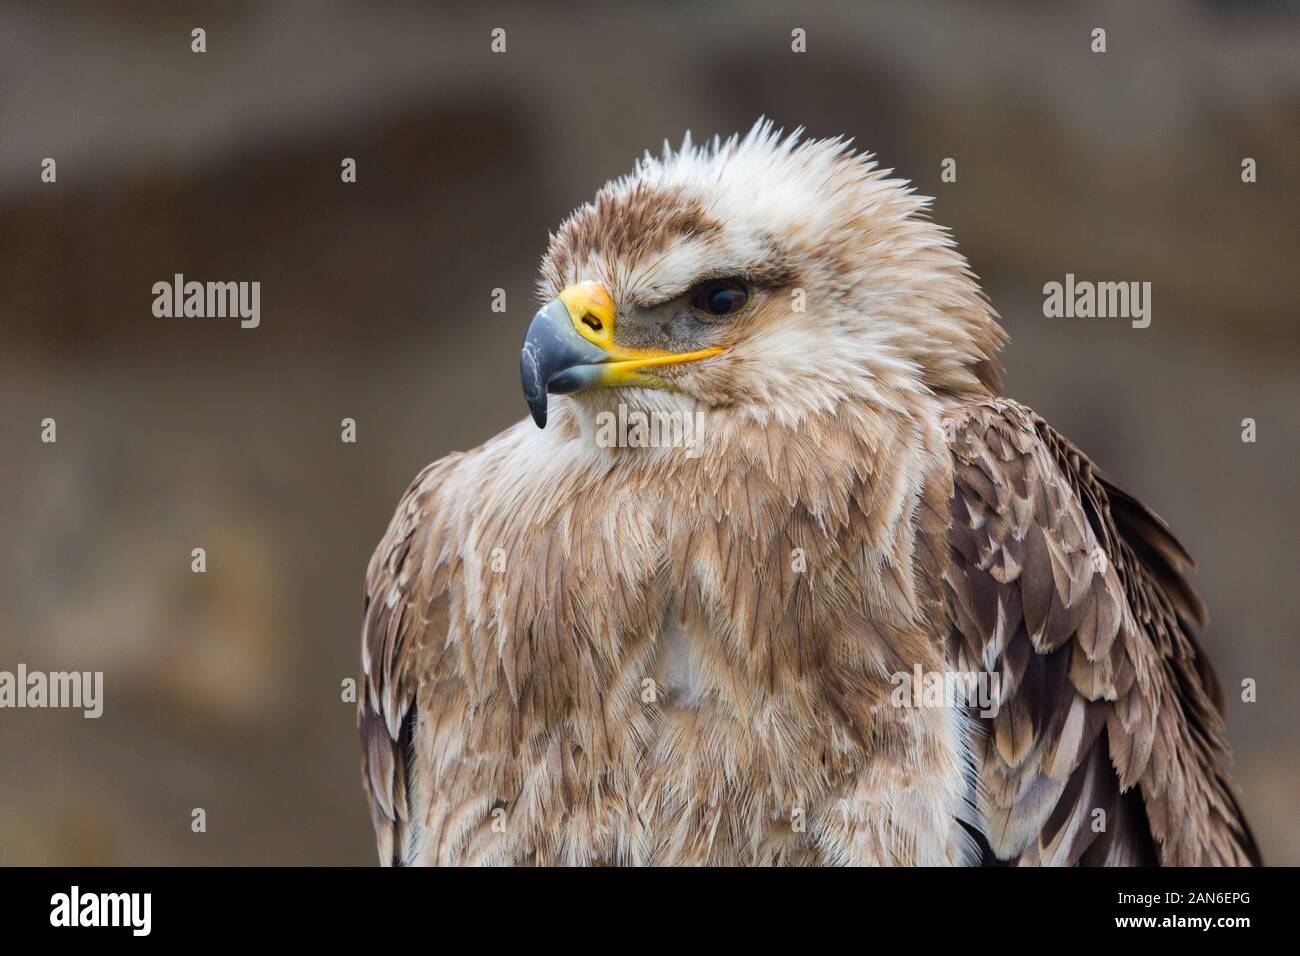 Profil eines aquila heliaca - besser bekannt als Eastern Imperial Eagle. Porträt des Greifvogels mit dem Kopf nach links. Auge, Schnabel, Federn. Stockfoto